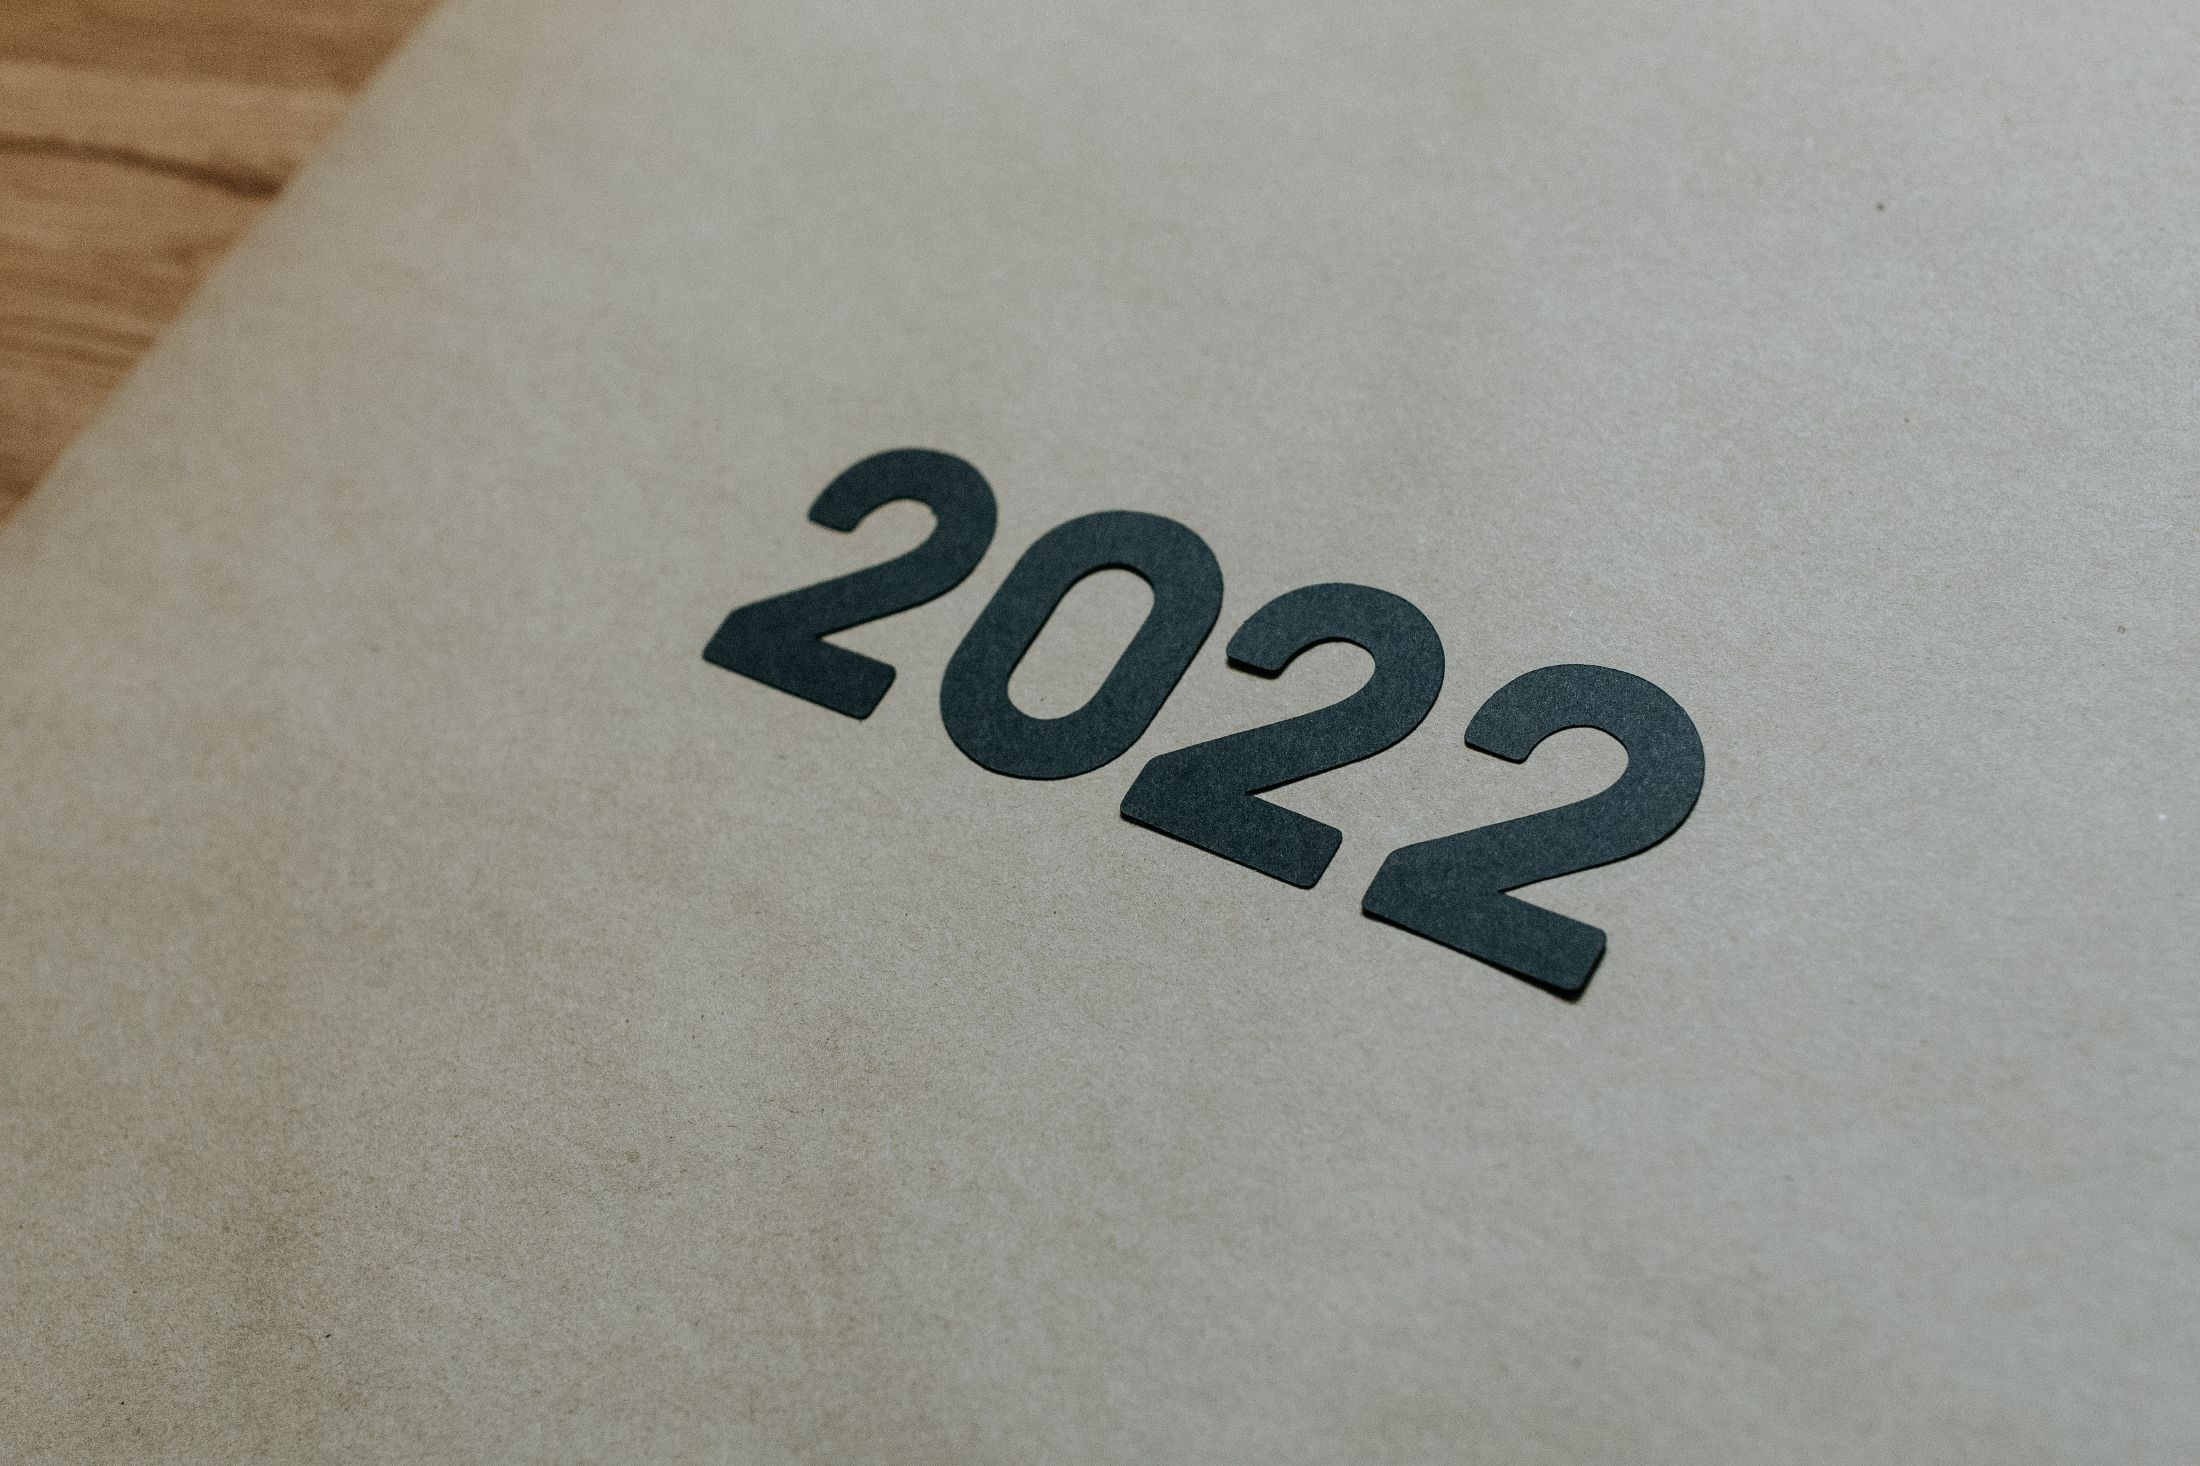 Starting dates 2022